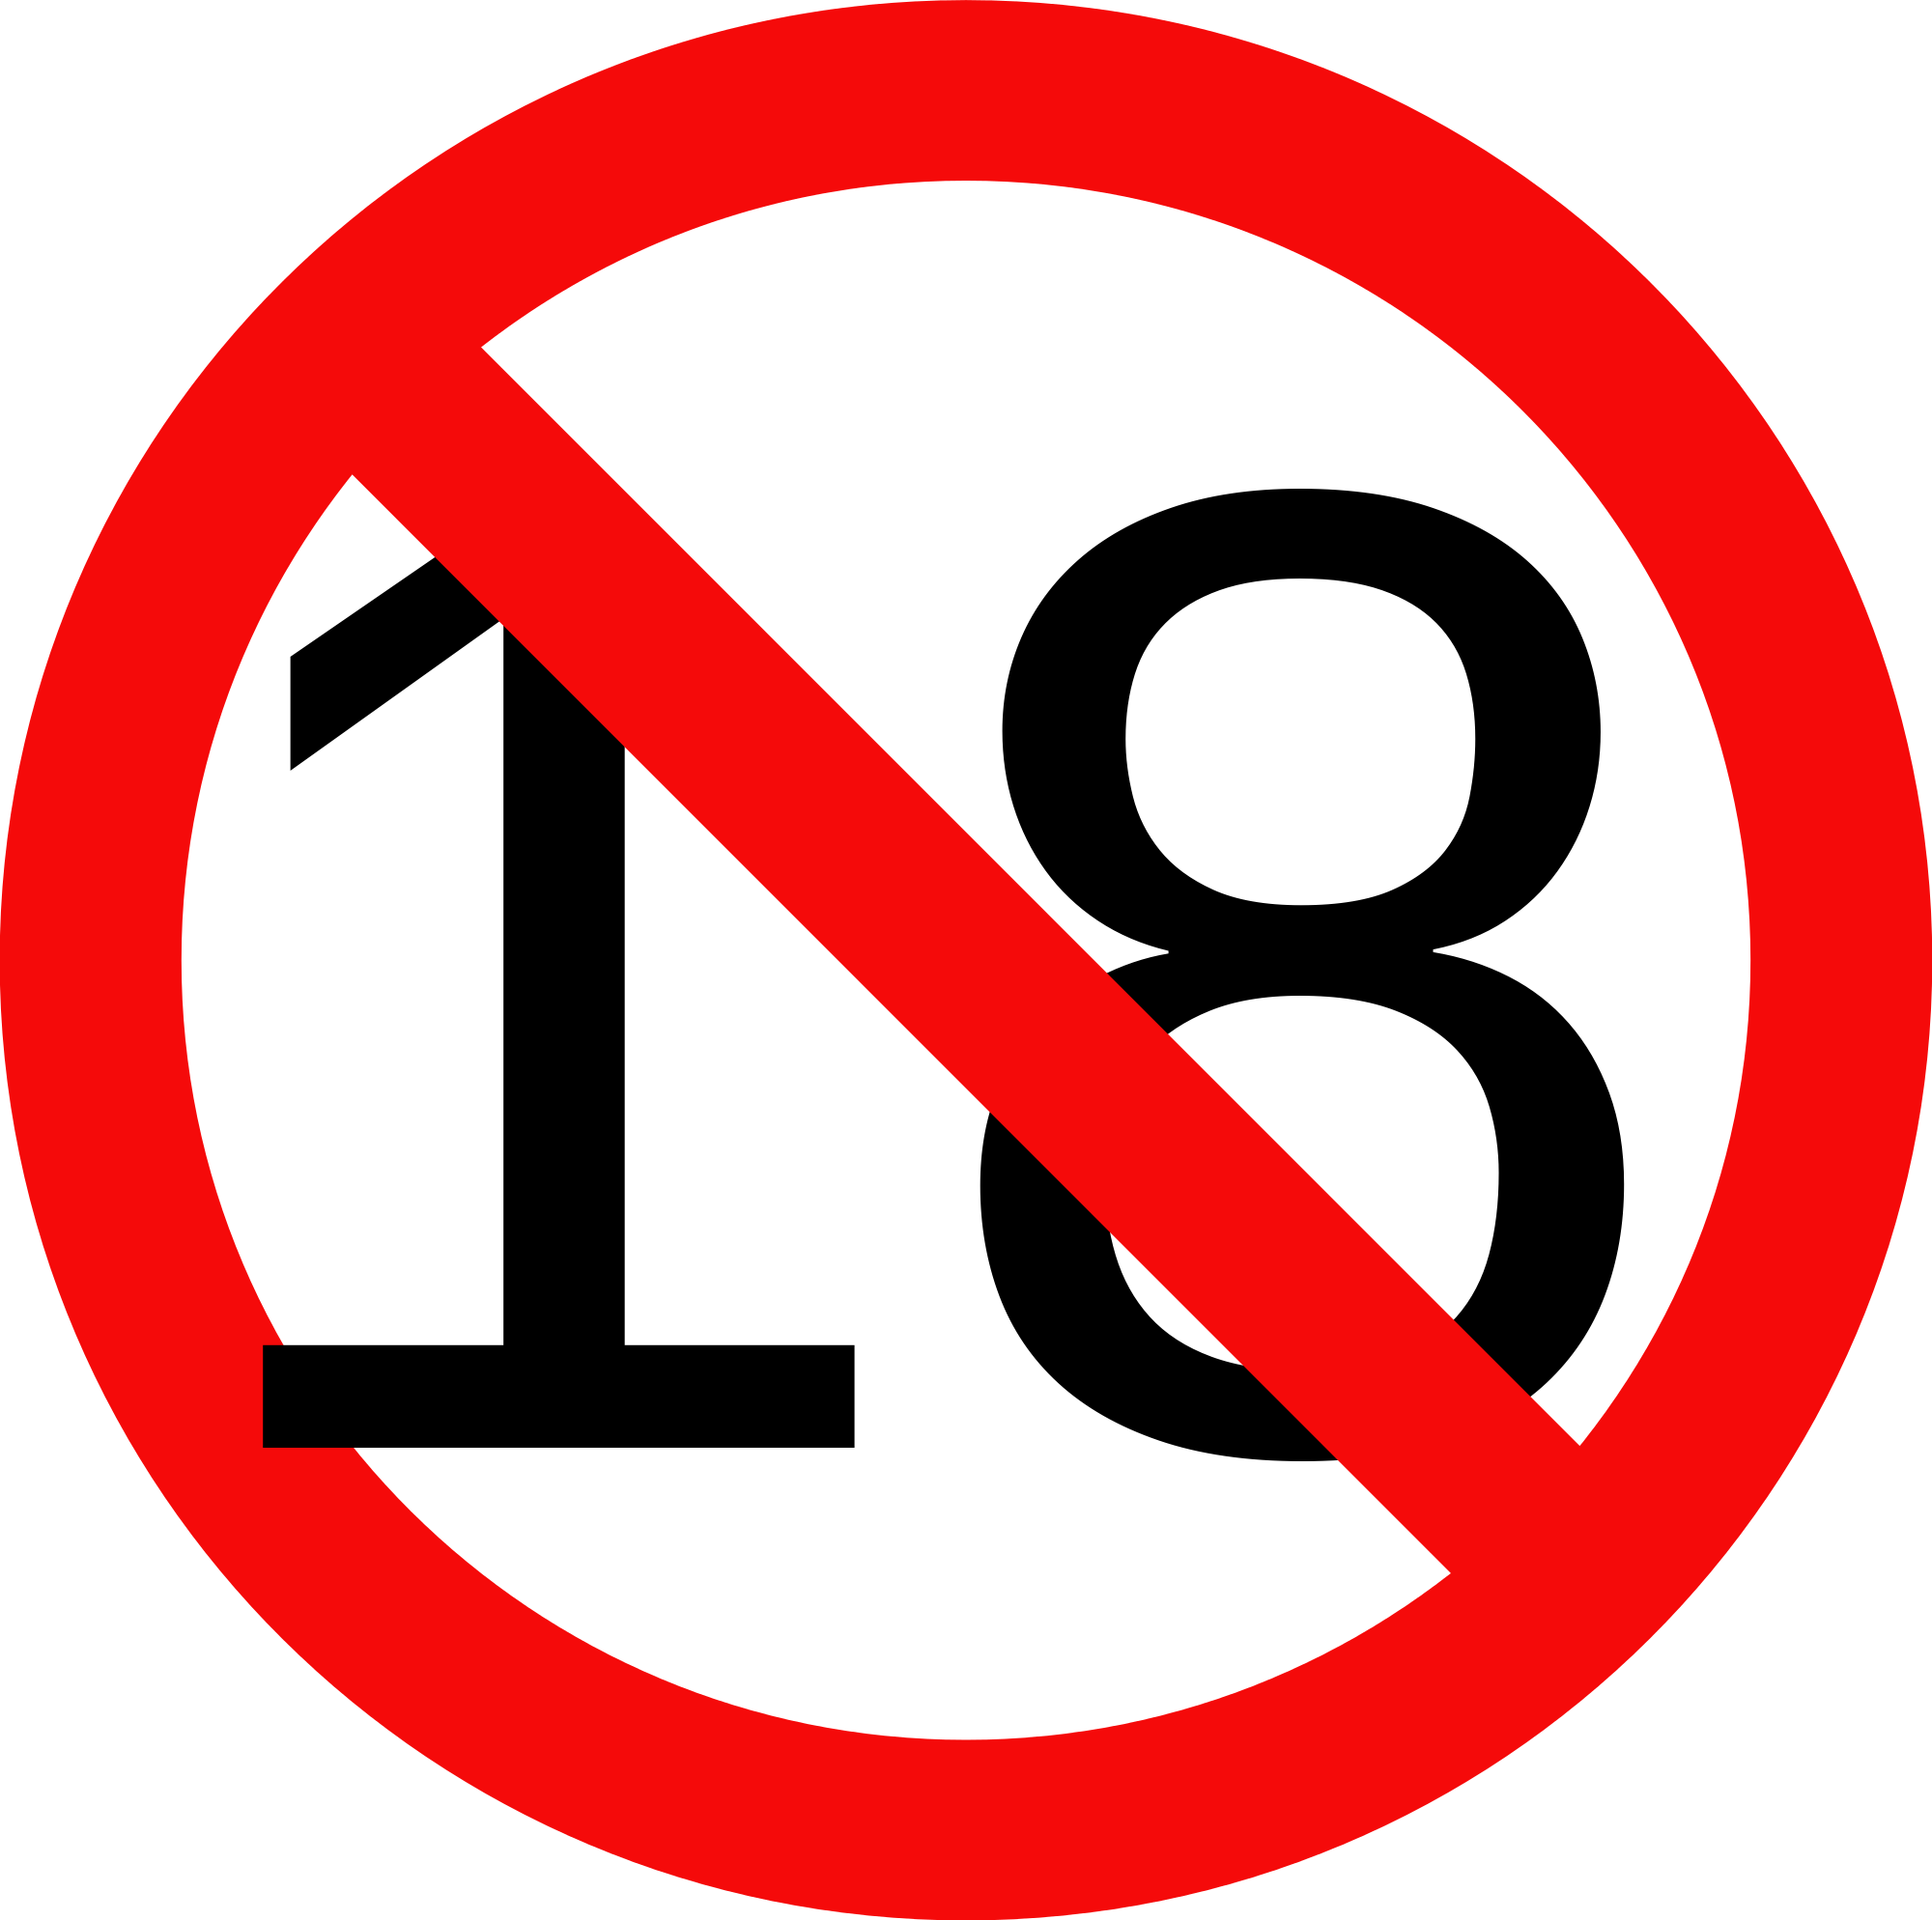 18 icon. Знак 18 +. Ограничение 18 на прозрачном фоне. Знак 18 без фона. Знак 18 на прозрачном фоне.